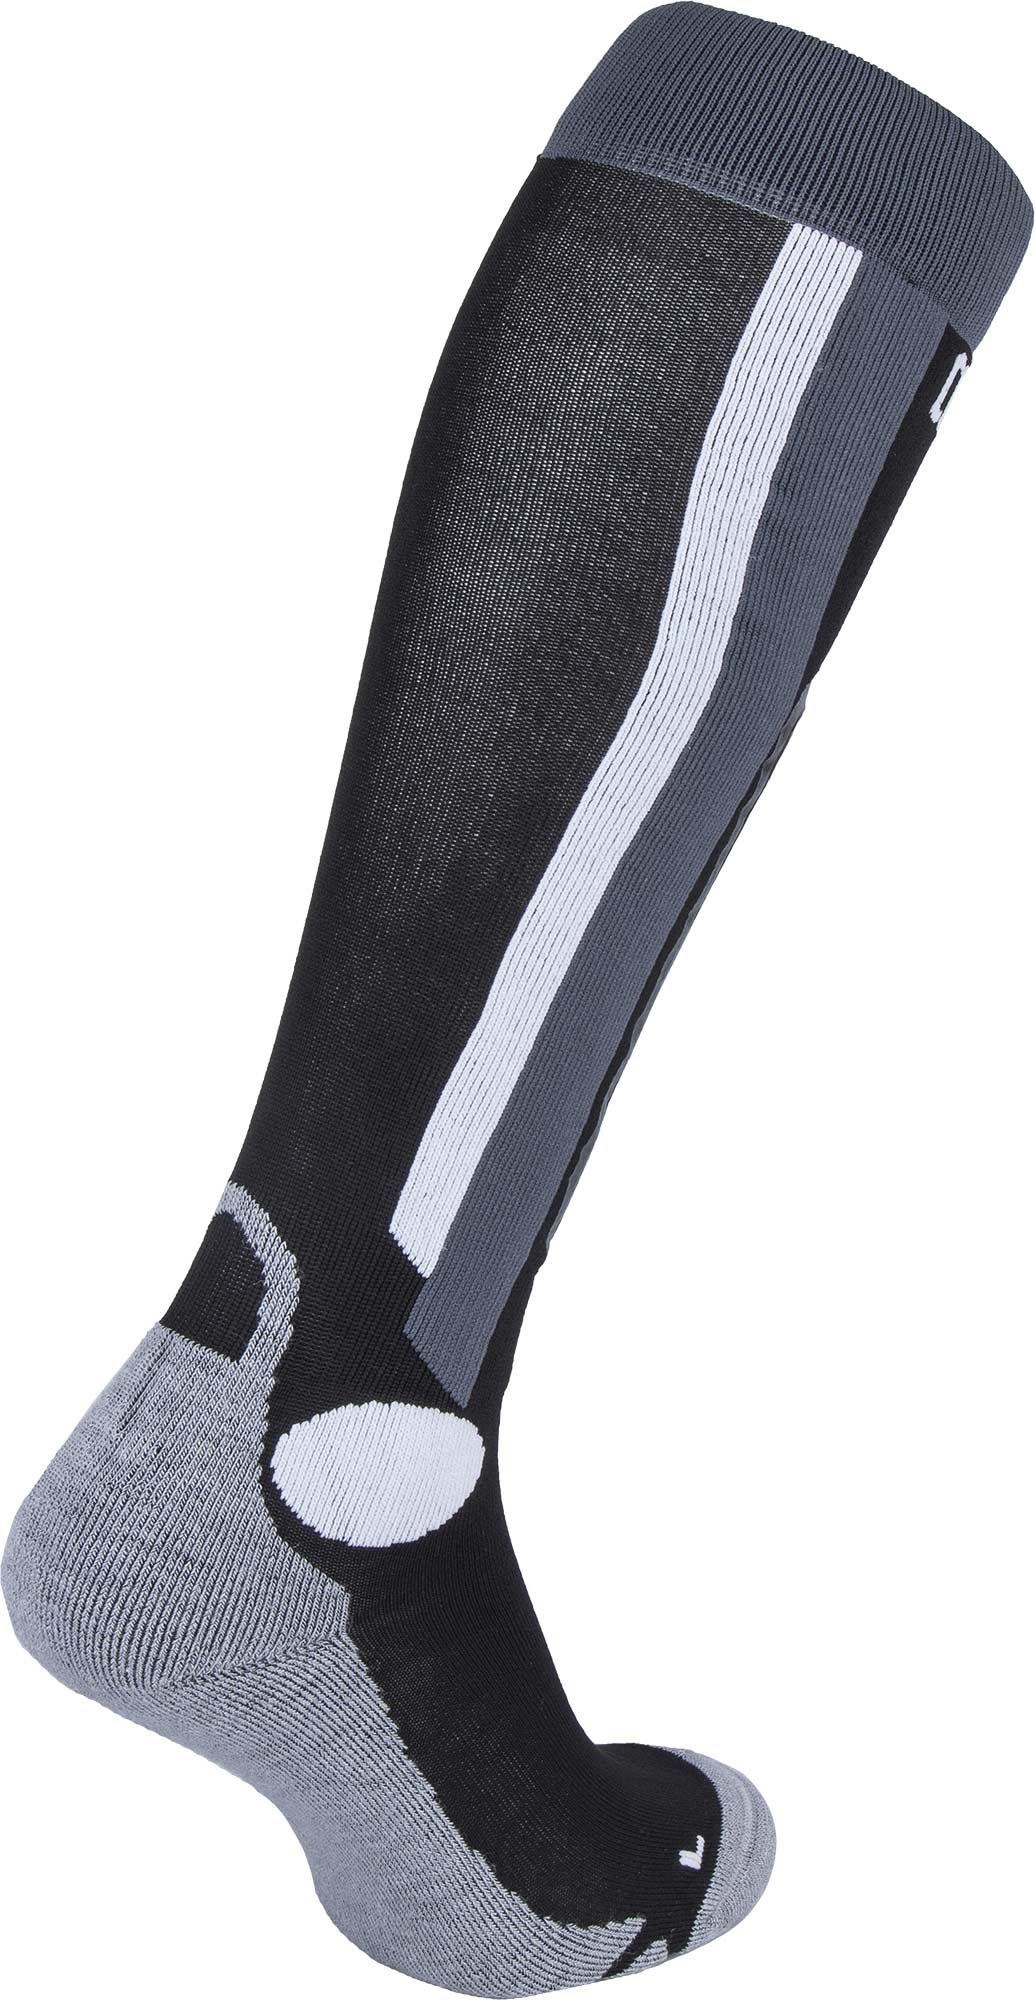 Men’s ski knee high socks